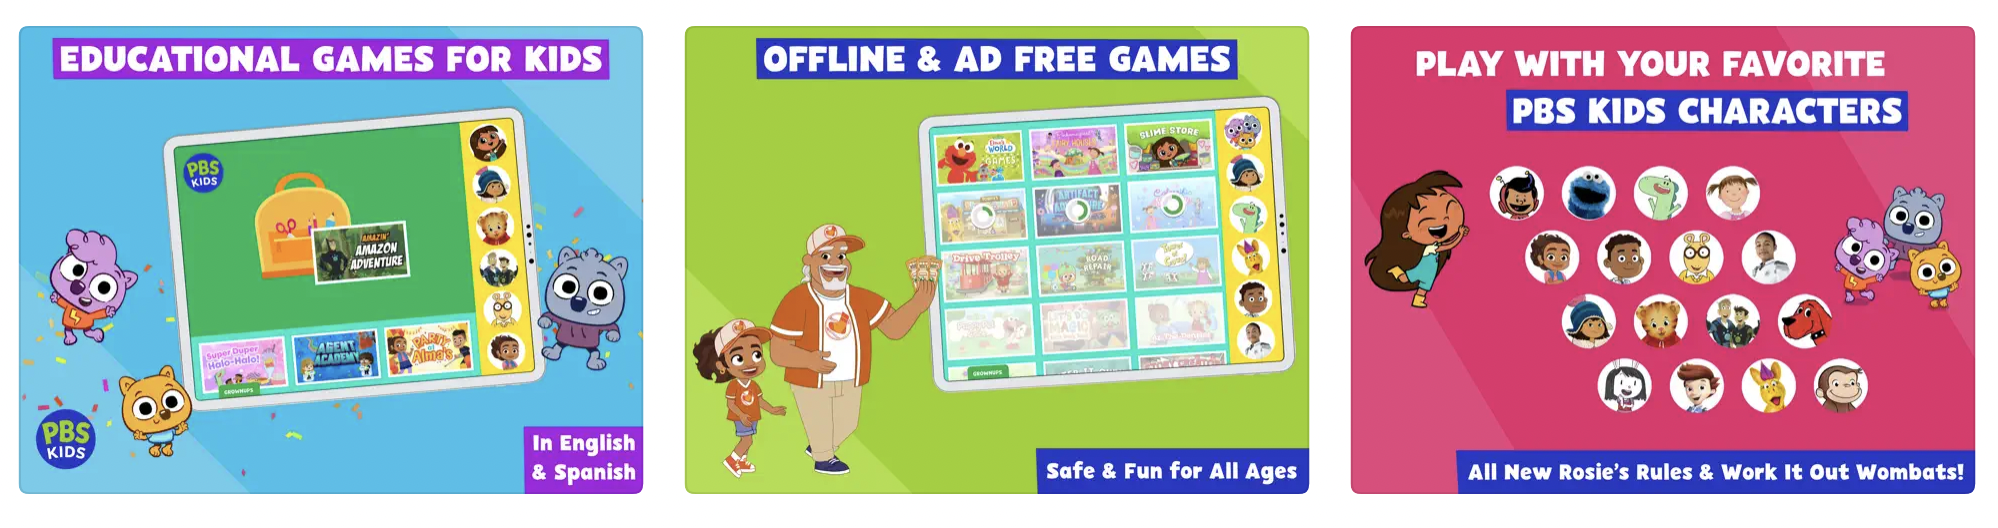 PBS KIDS Games screenshots